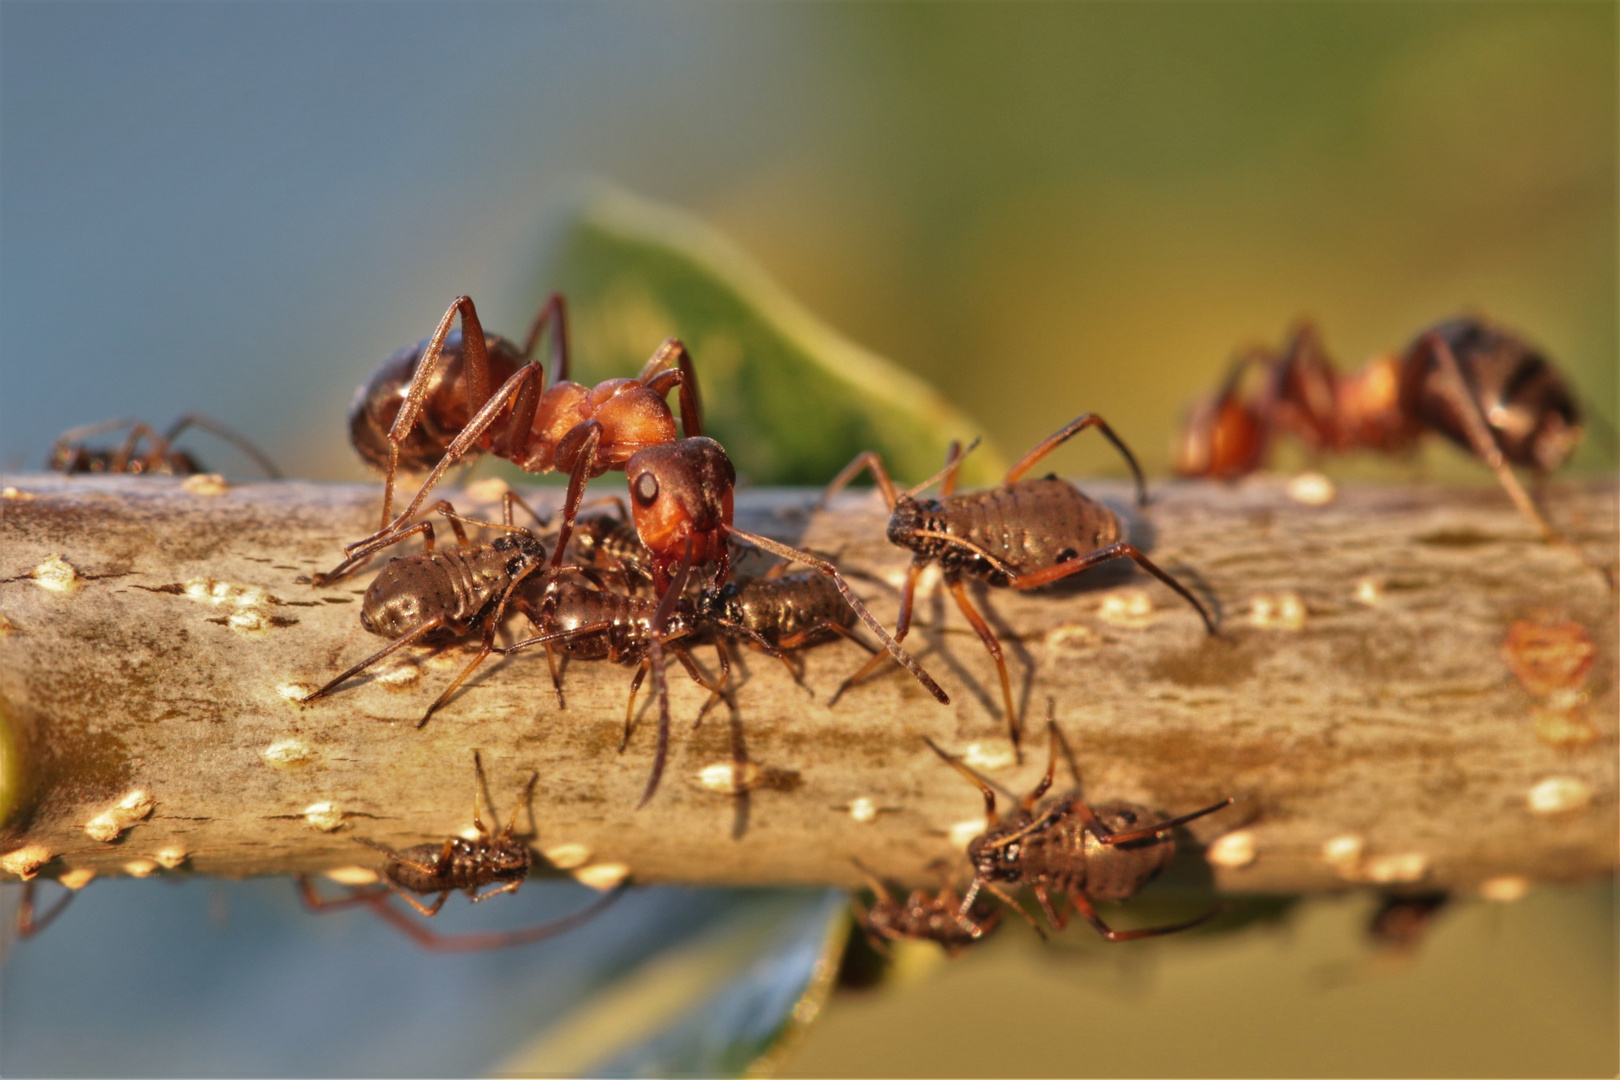 Ameisenmakro zur Erntezeit